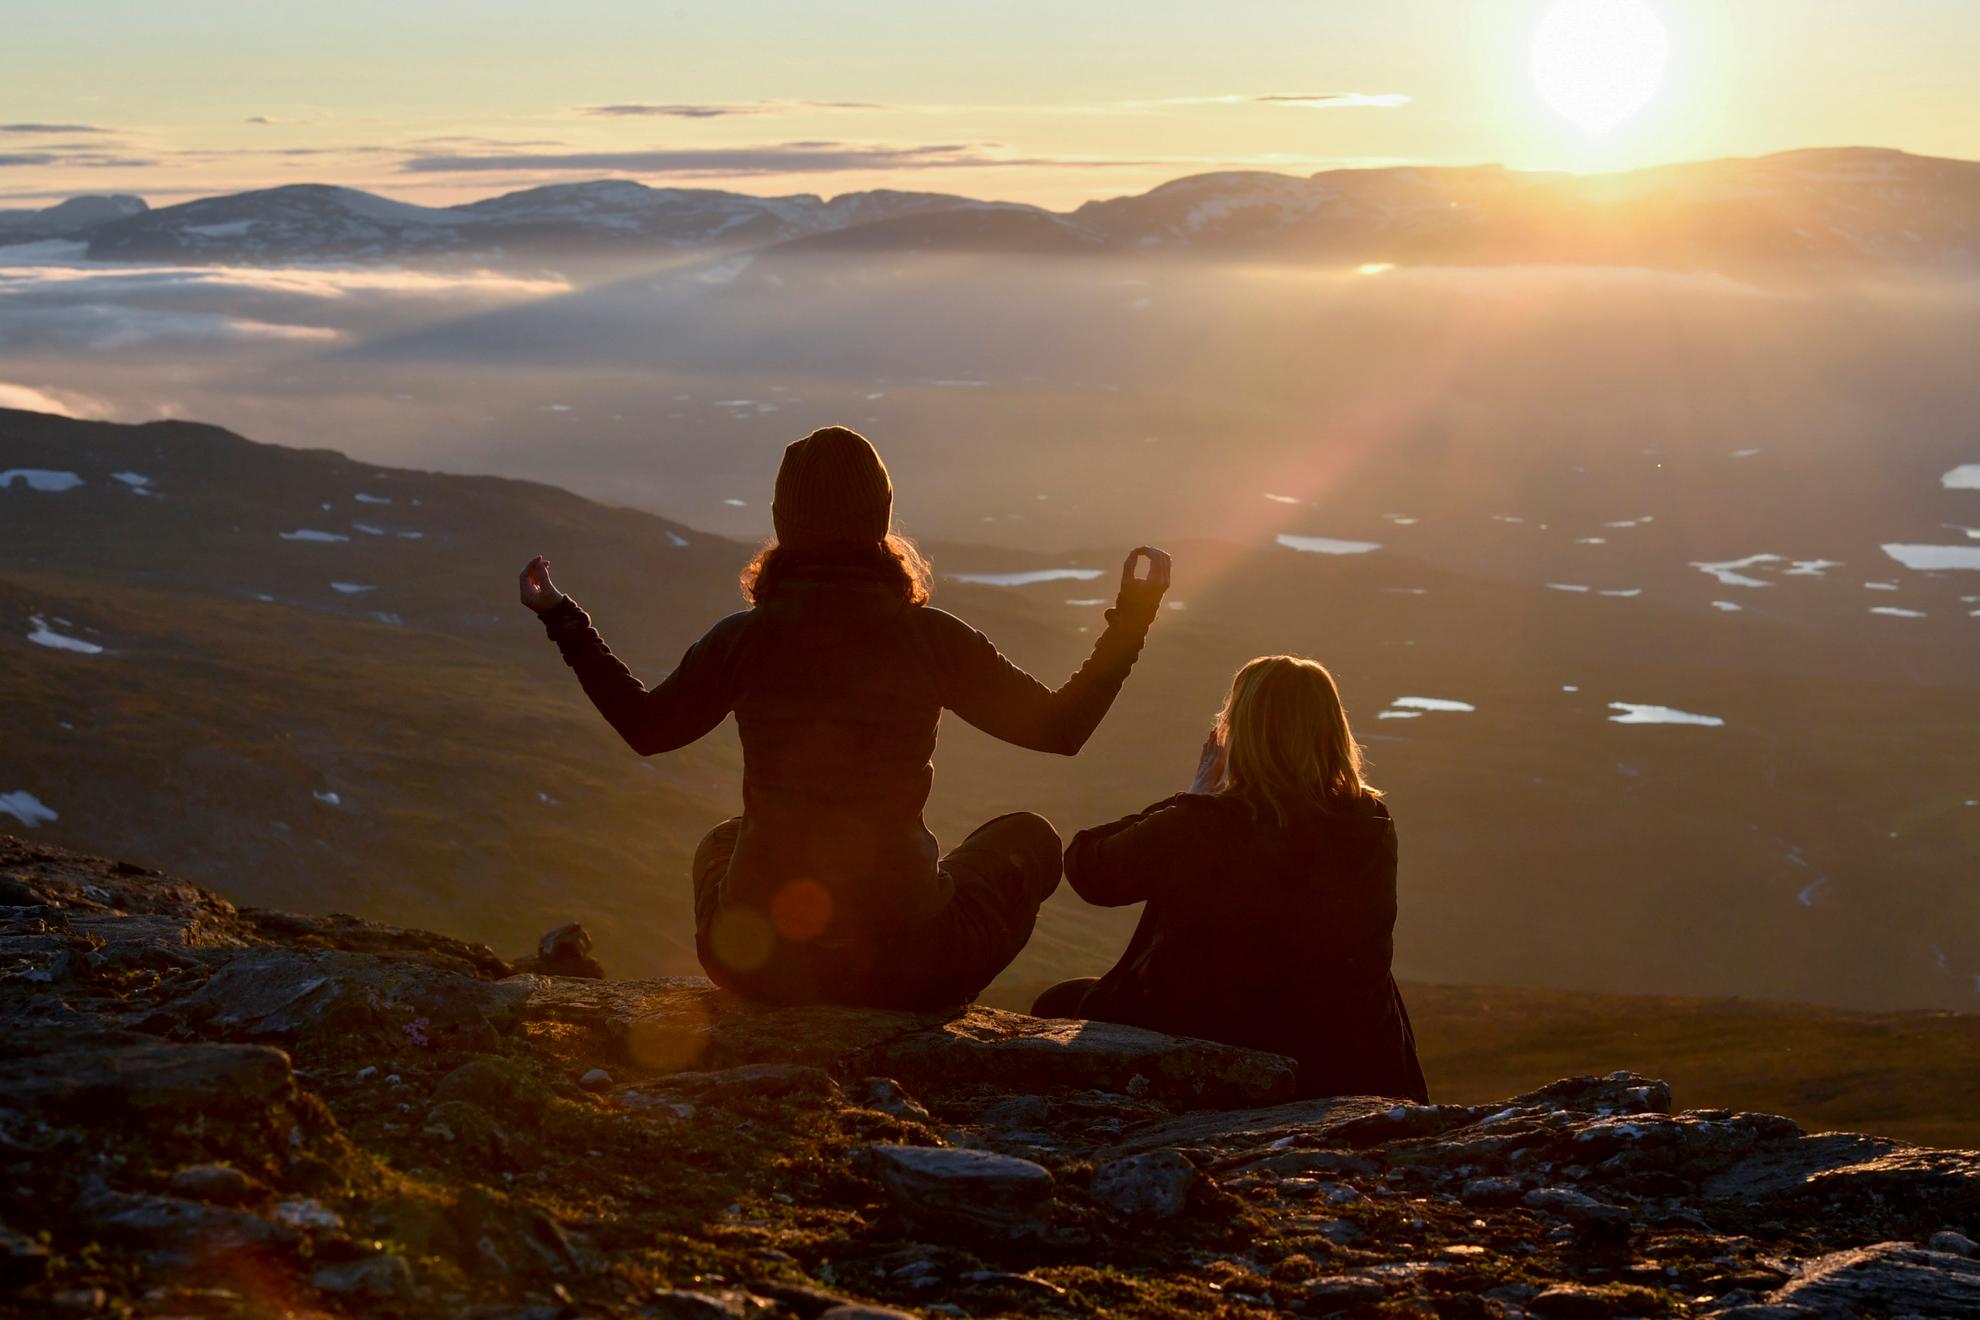 Eine Frau sitzt im Lotussitz neben einer anderen Frau, die ihre Handflächen aneinander presst, vor Bergen und einem Sonnenuntergang.